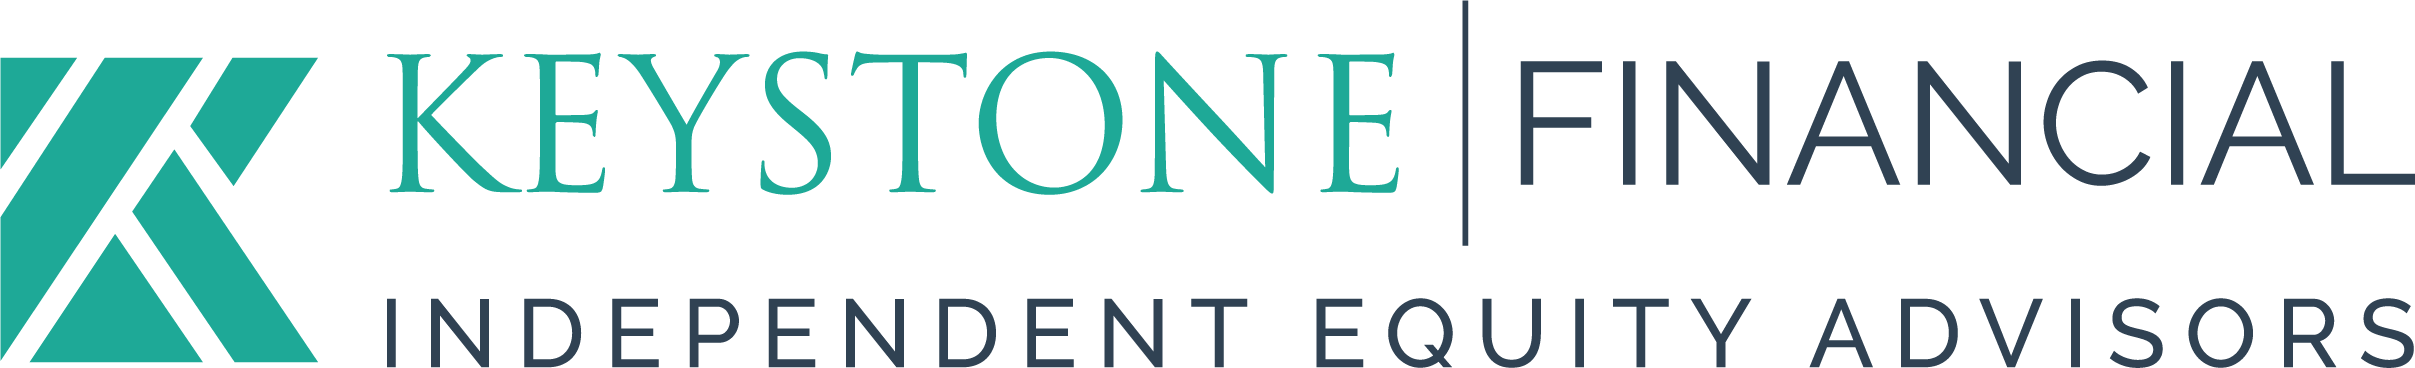 Keystone Financial logo